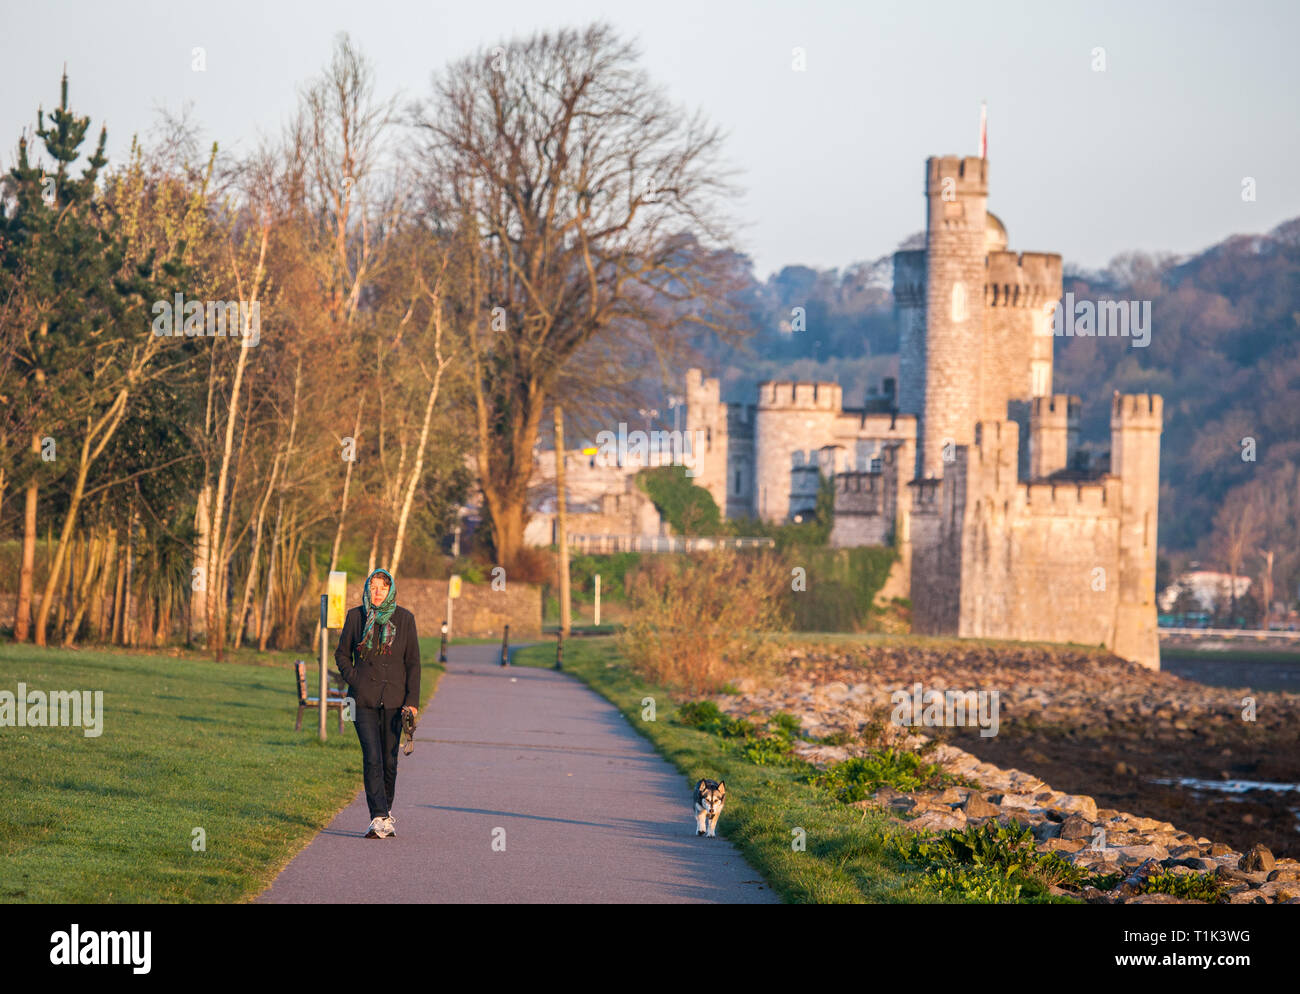 Blackrock, Cork, Irlanda. El 27 de marzo, 2019. Heike Dornig tomar una caminata en la mañana con su perro en el lough Mahon paseo público cerca del castillo de Blackrock, Cork, Irlanda. Crédito: David Creedon/Alamy Live News Foto de stock